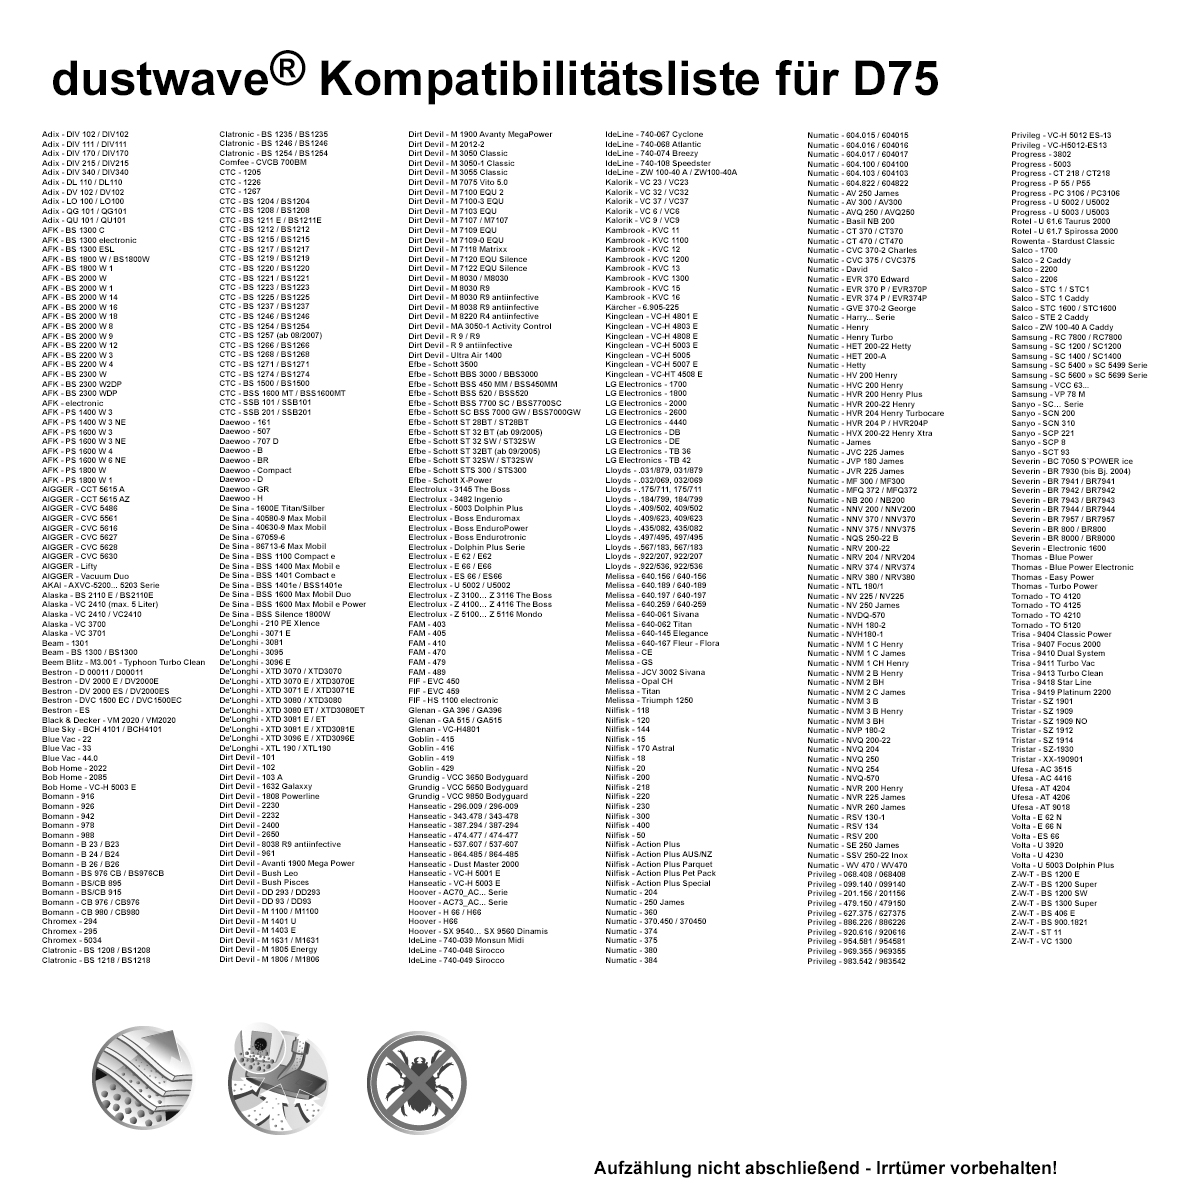 Dustwave® 20 Staubsaugerbeutel für Hoover SX9541 011 Wet &amp; Dry - hocheffizient, mehrlagiges Mikrovlies mit Hygieneverschluss - Made in Germany